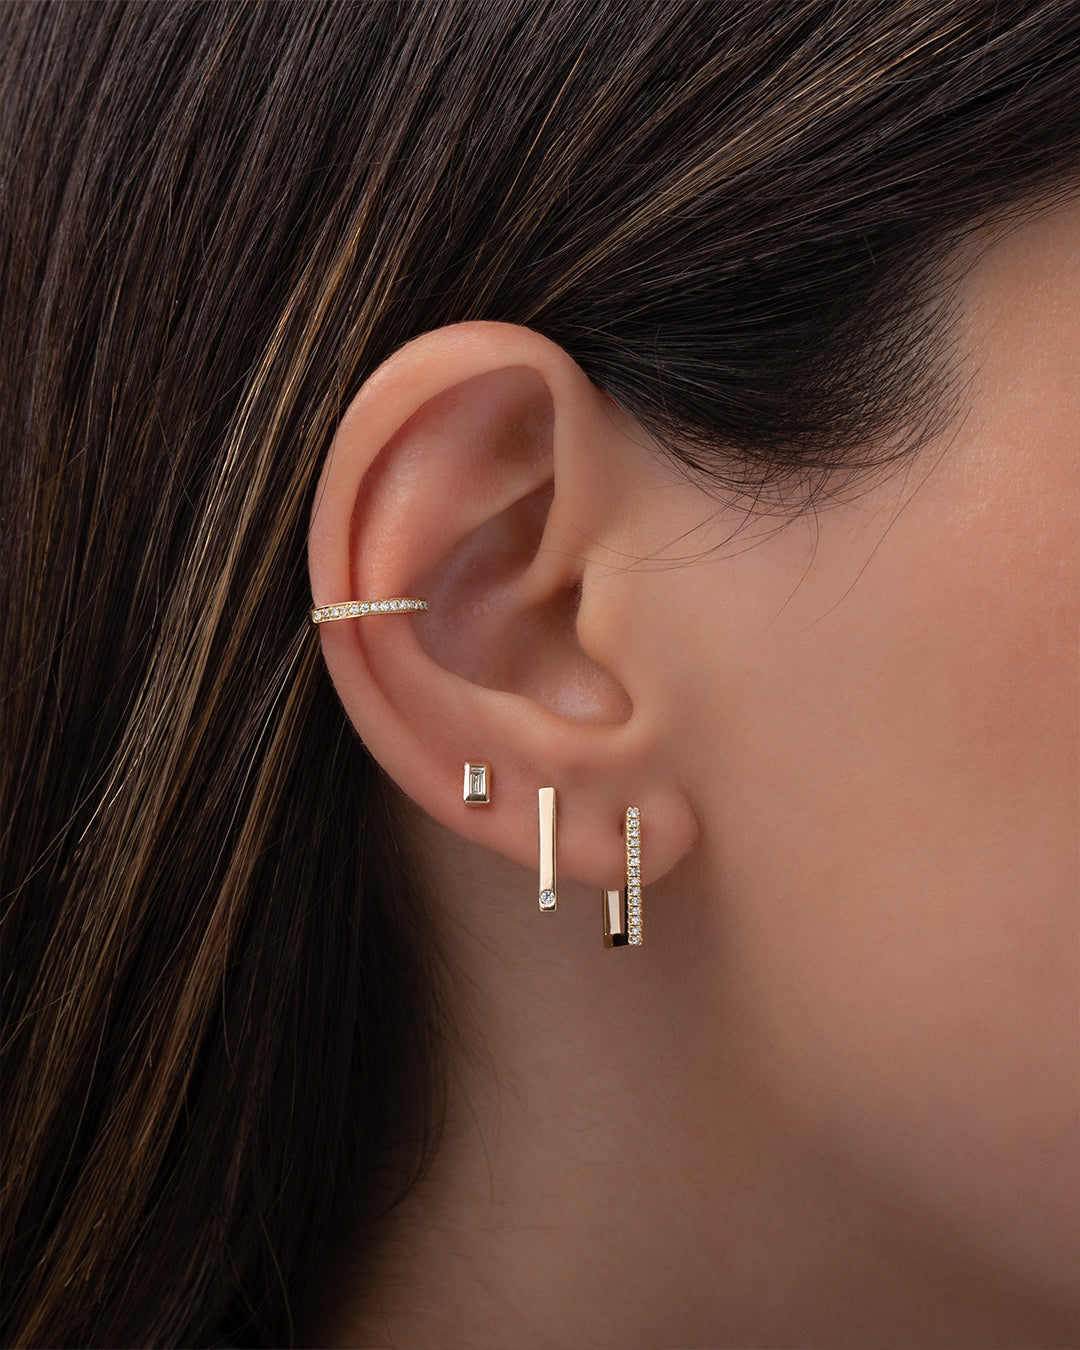 American diamond 22k gold look ear cuff earrings